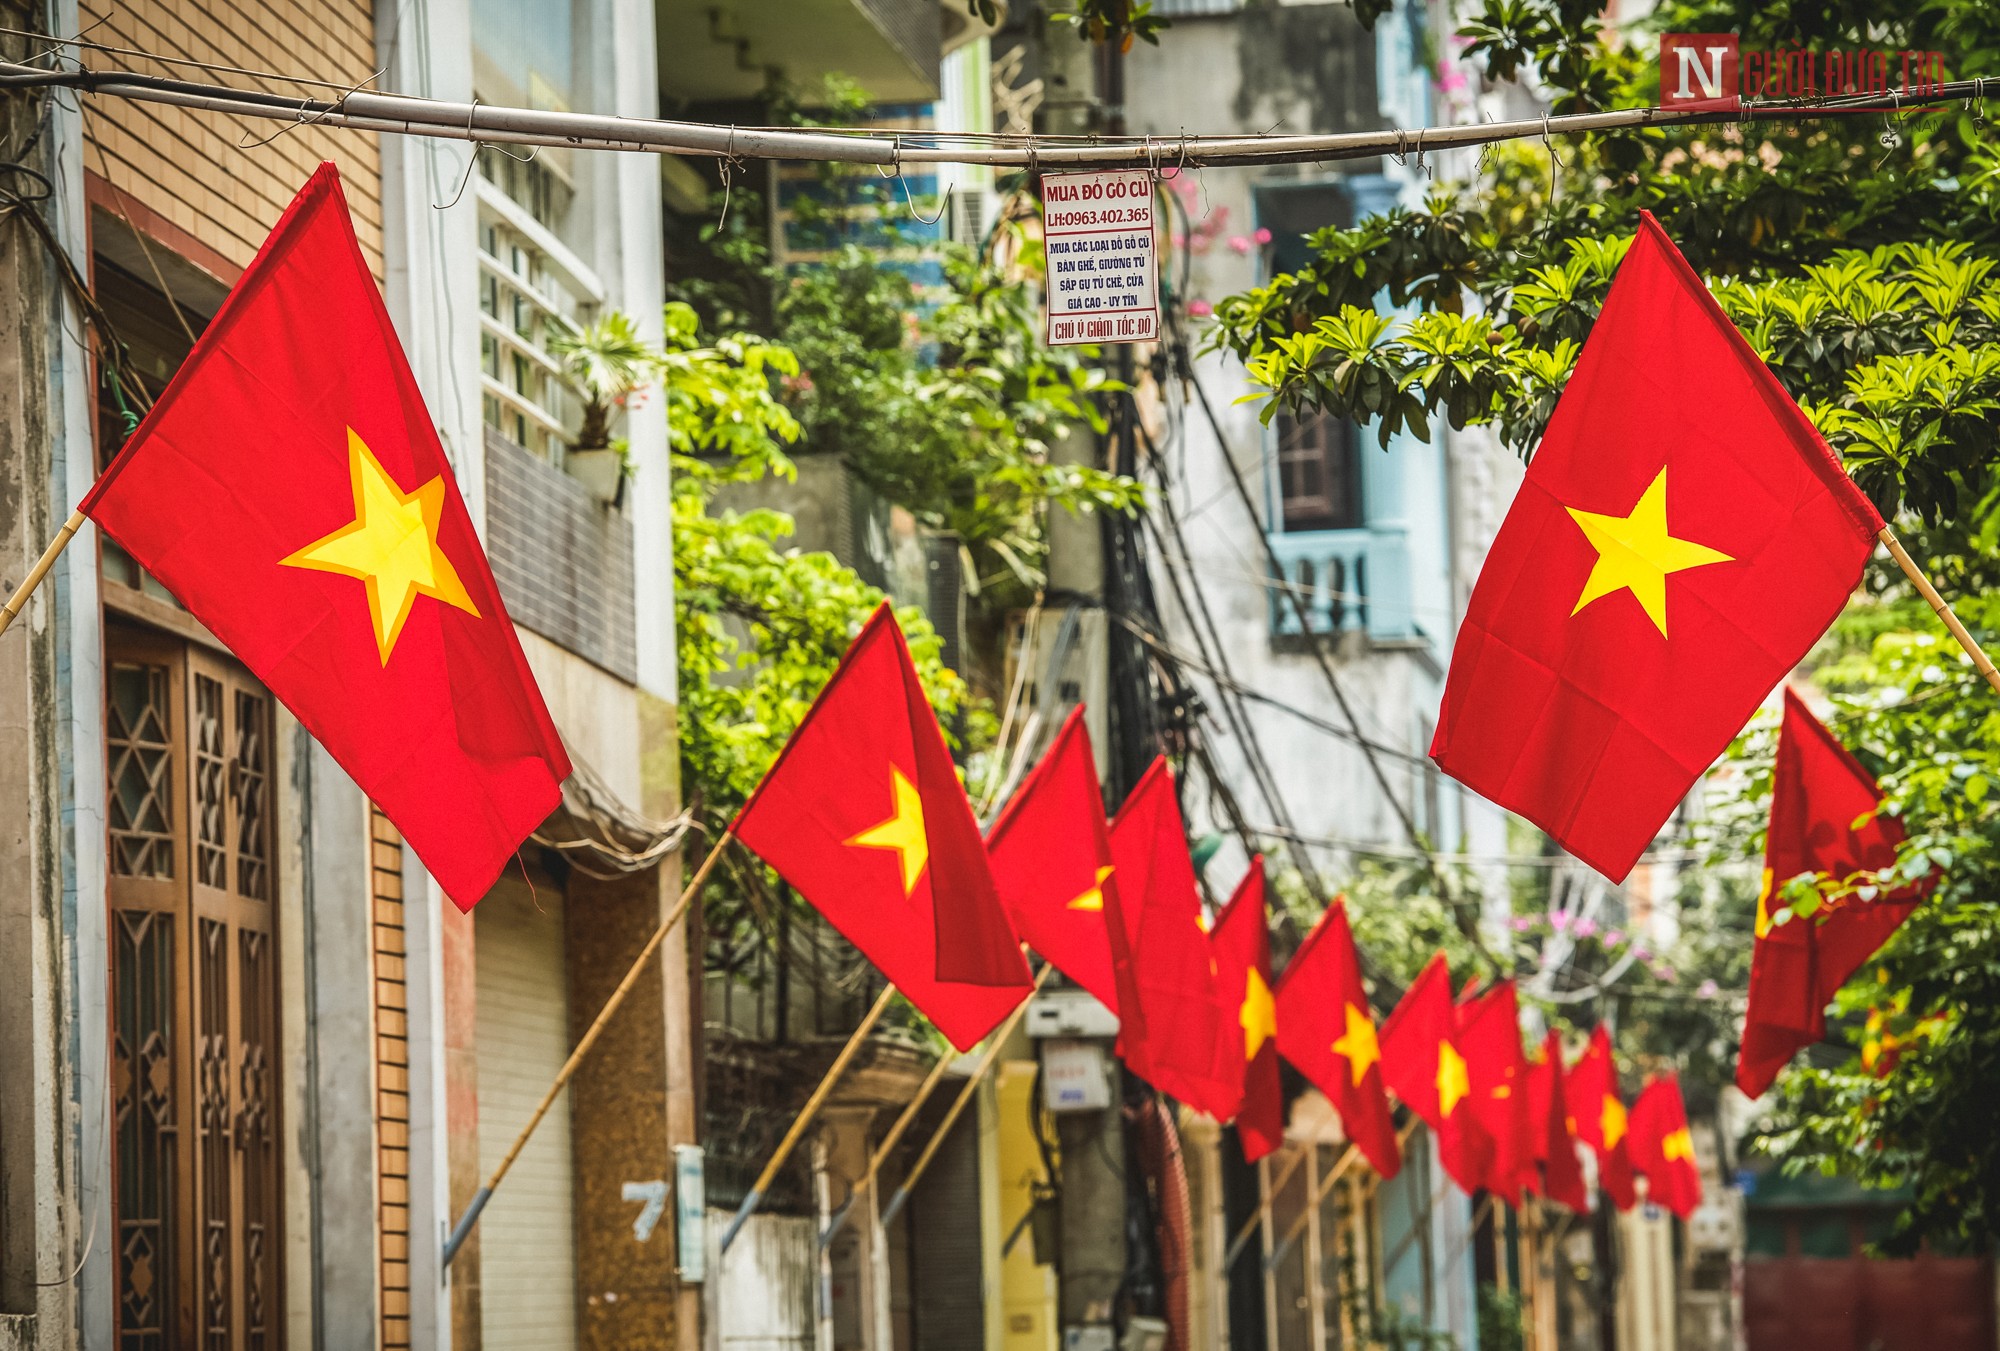 Cờ Tổ Quốc được coi là biểu tượng toàn quốc thể hiện tình yêu quê hương. Hình ảnh cờ bay rực rỡ trên bầu trời là một trong những khoảnh khắc đẹp nhất của đất nước Việt Nam. Mỗi khi nhìn thấy cờ Tổ quốc, chúng ta lại cảm thấy tự hào về đất nước và tinh thần yêu nước được khơi dậy.